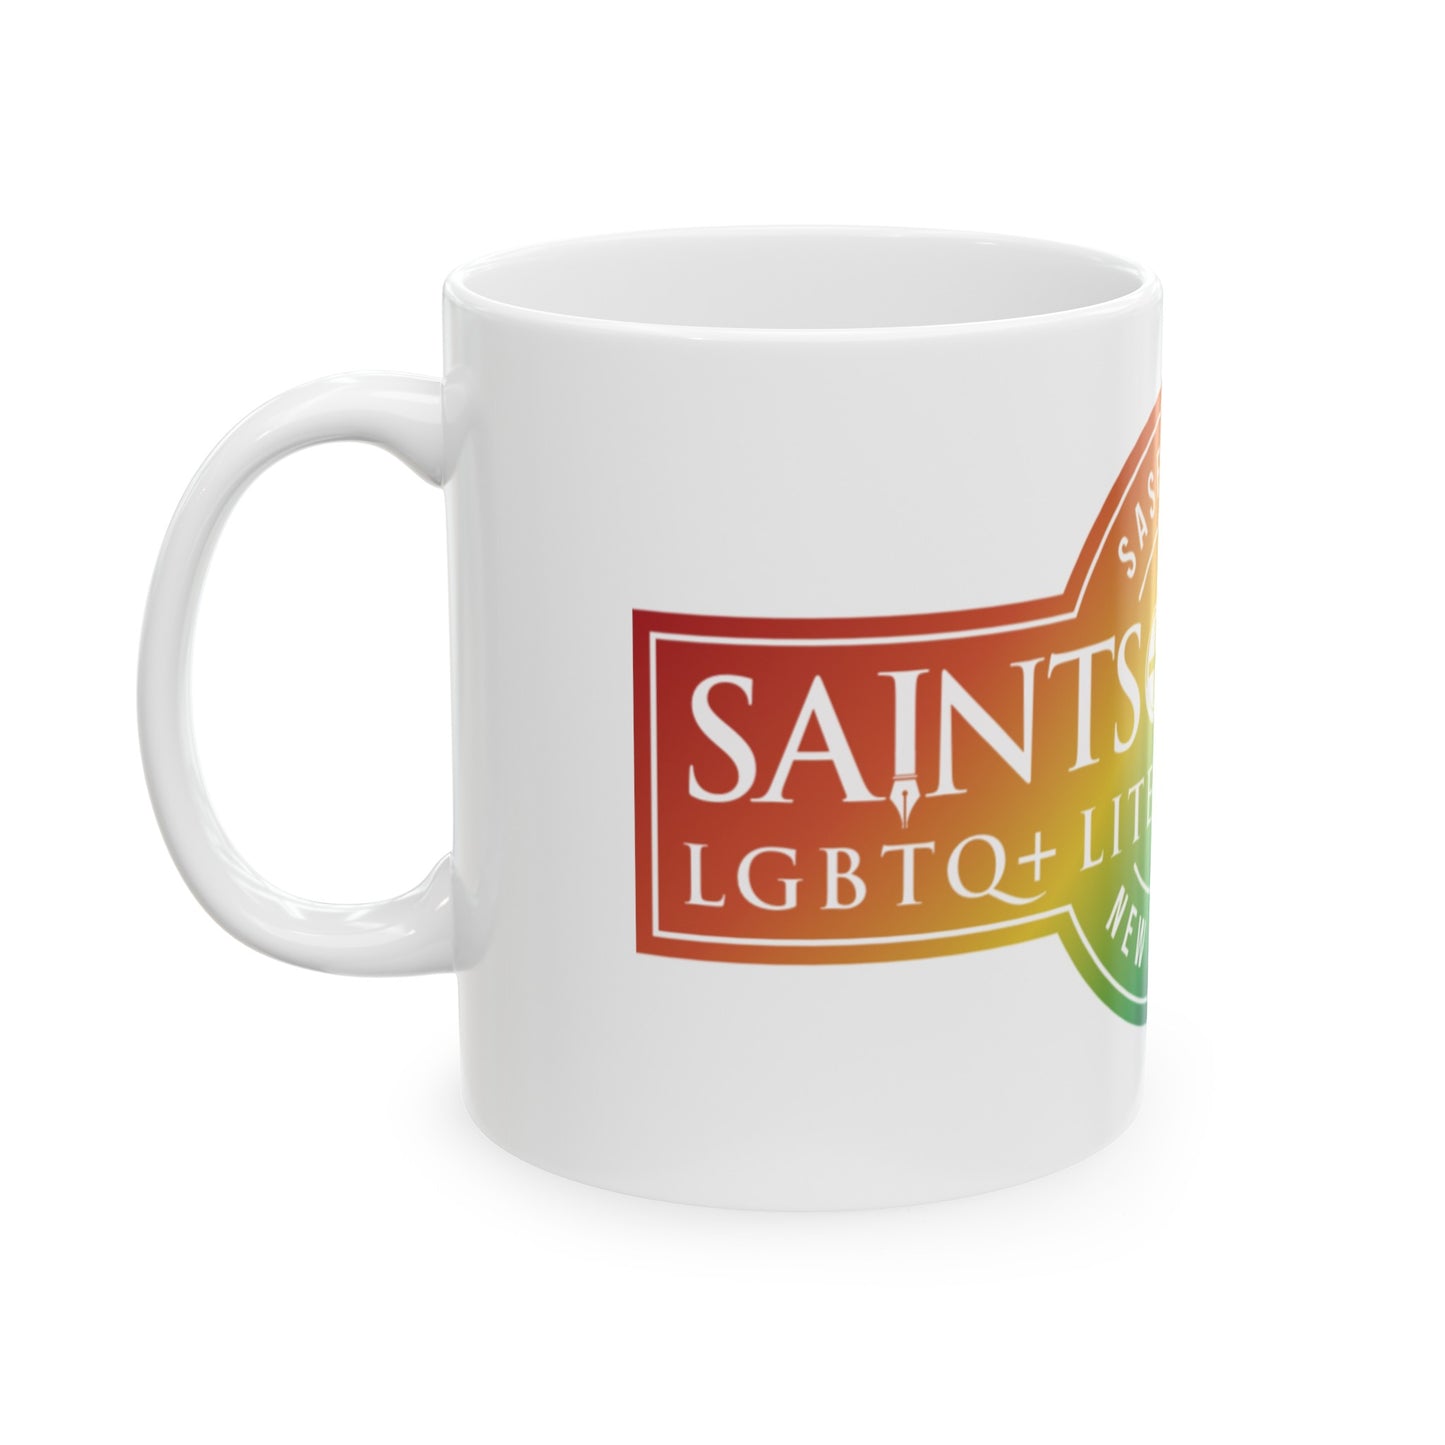 SASFest  Rainbow Logo Ceramic Mug